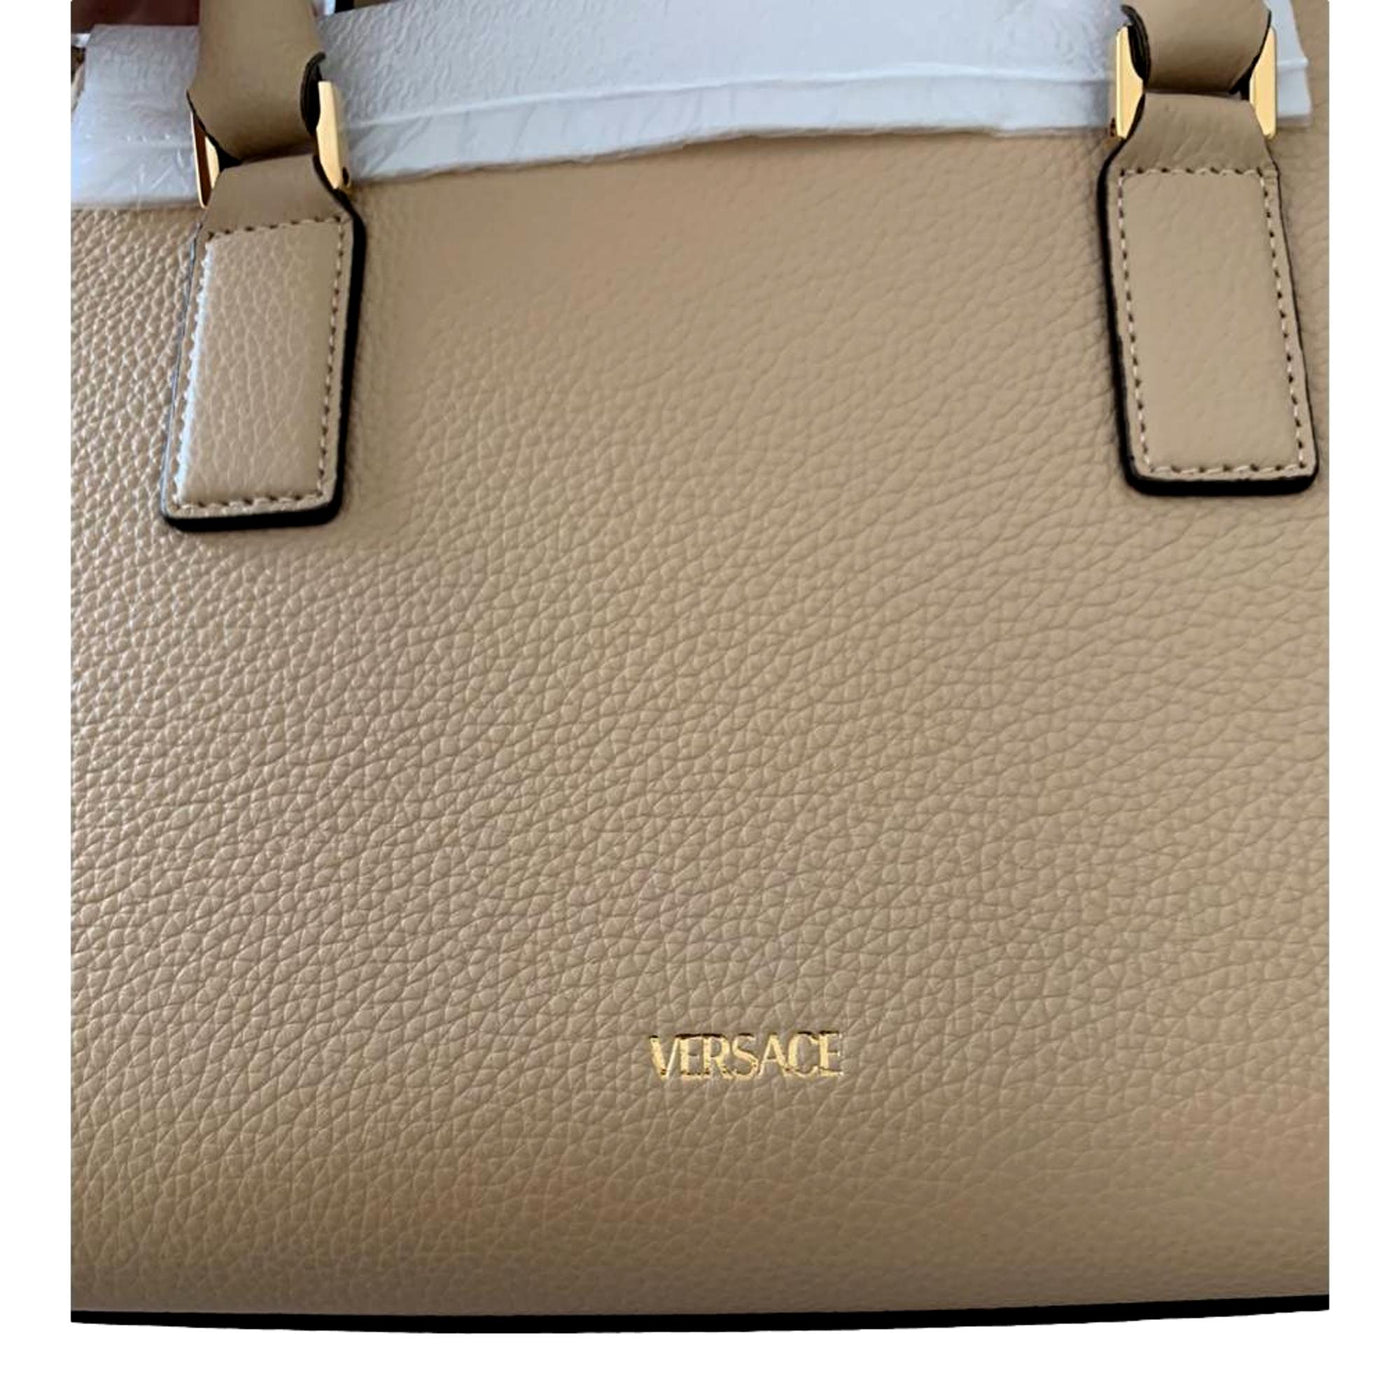 Versace Virtus Beige Calf Leather Top Handle Crossbody Bag - LUXURYMRKT